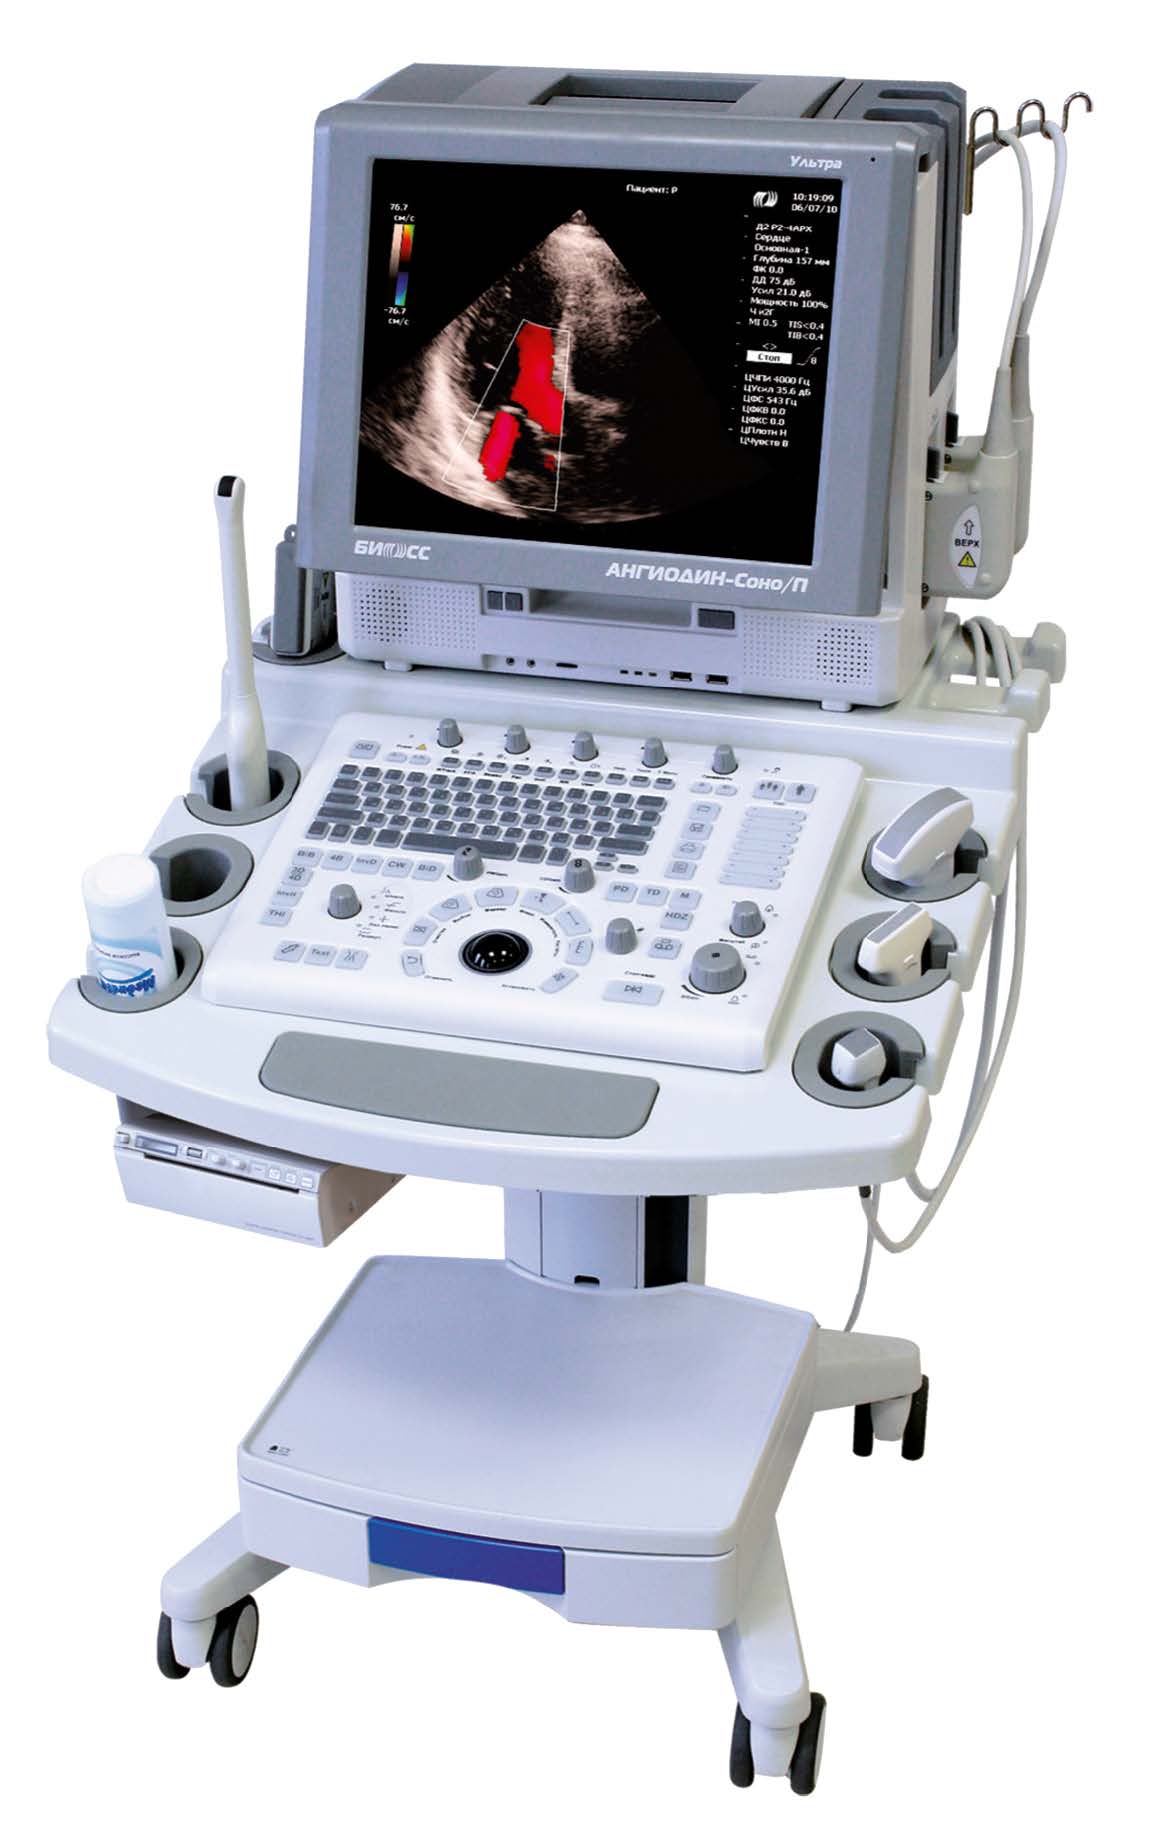 Ультразвуковой диагностический сканер высокого класса «АНГИОДИН-СОНО/П»